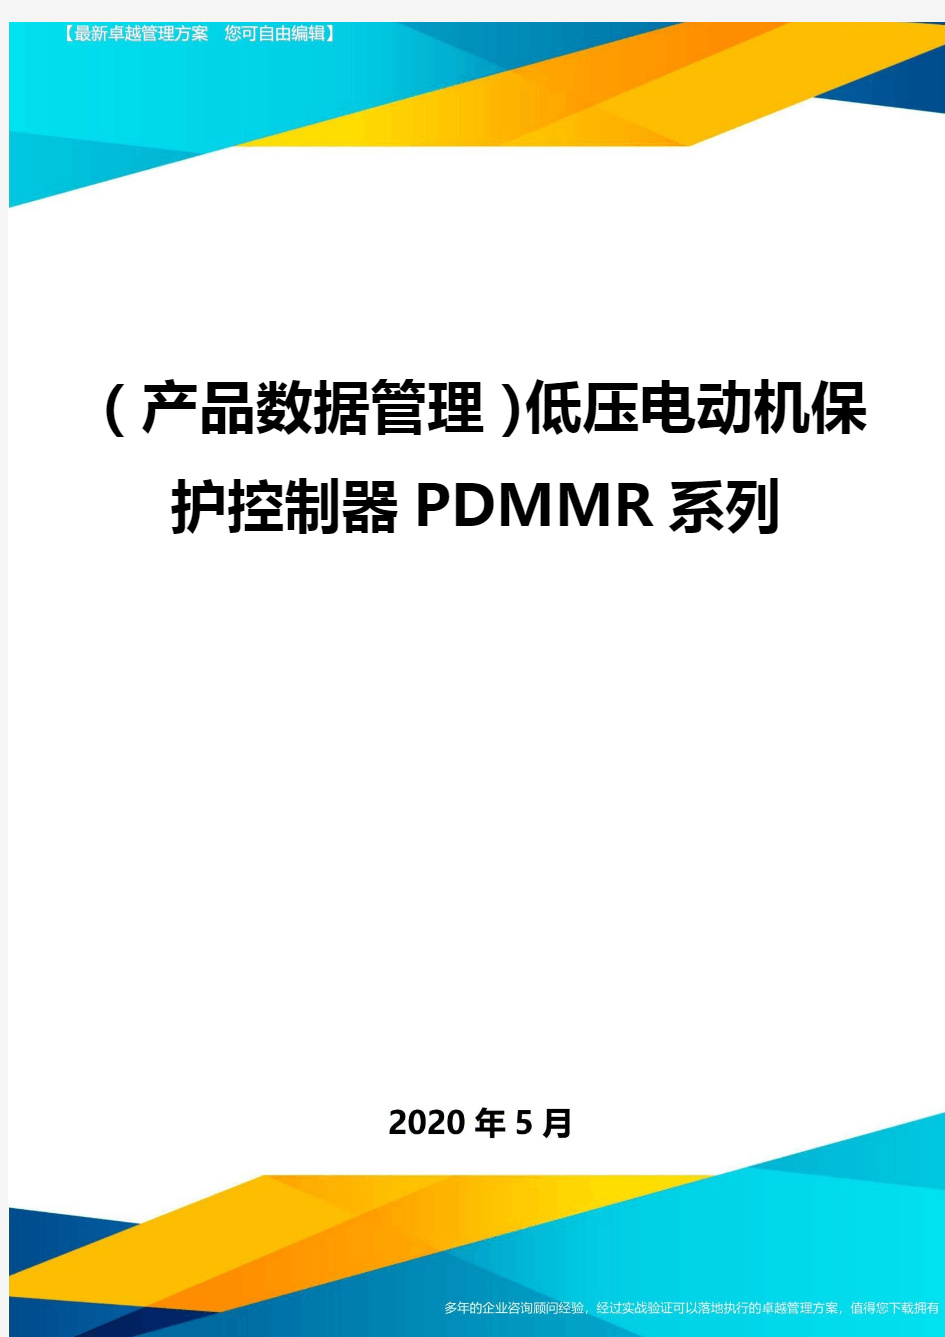 ( 产品数据管理)低压电动机保护控制器PDMMR系列